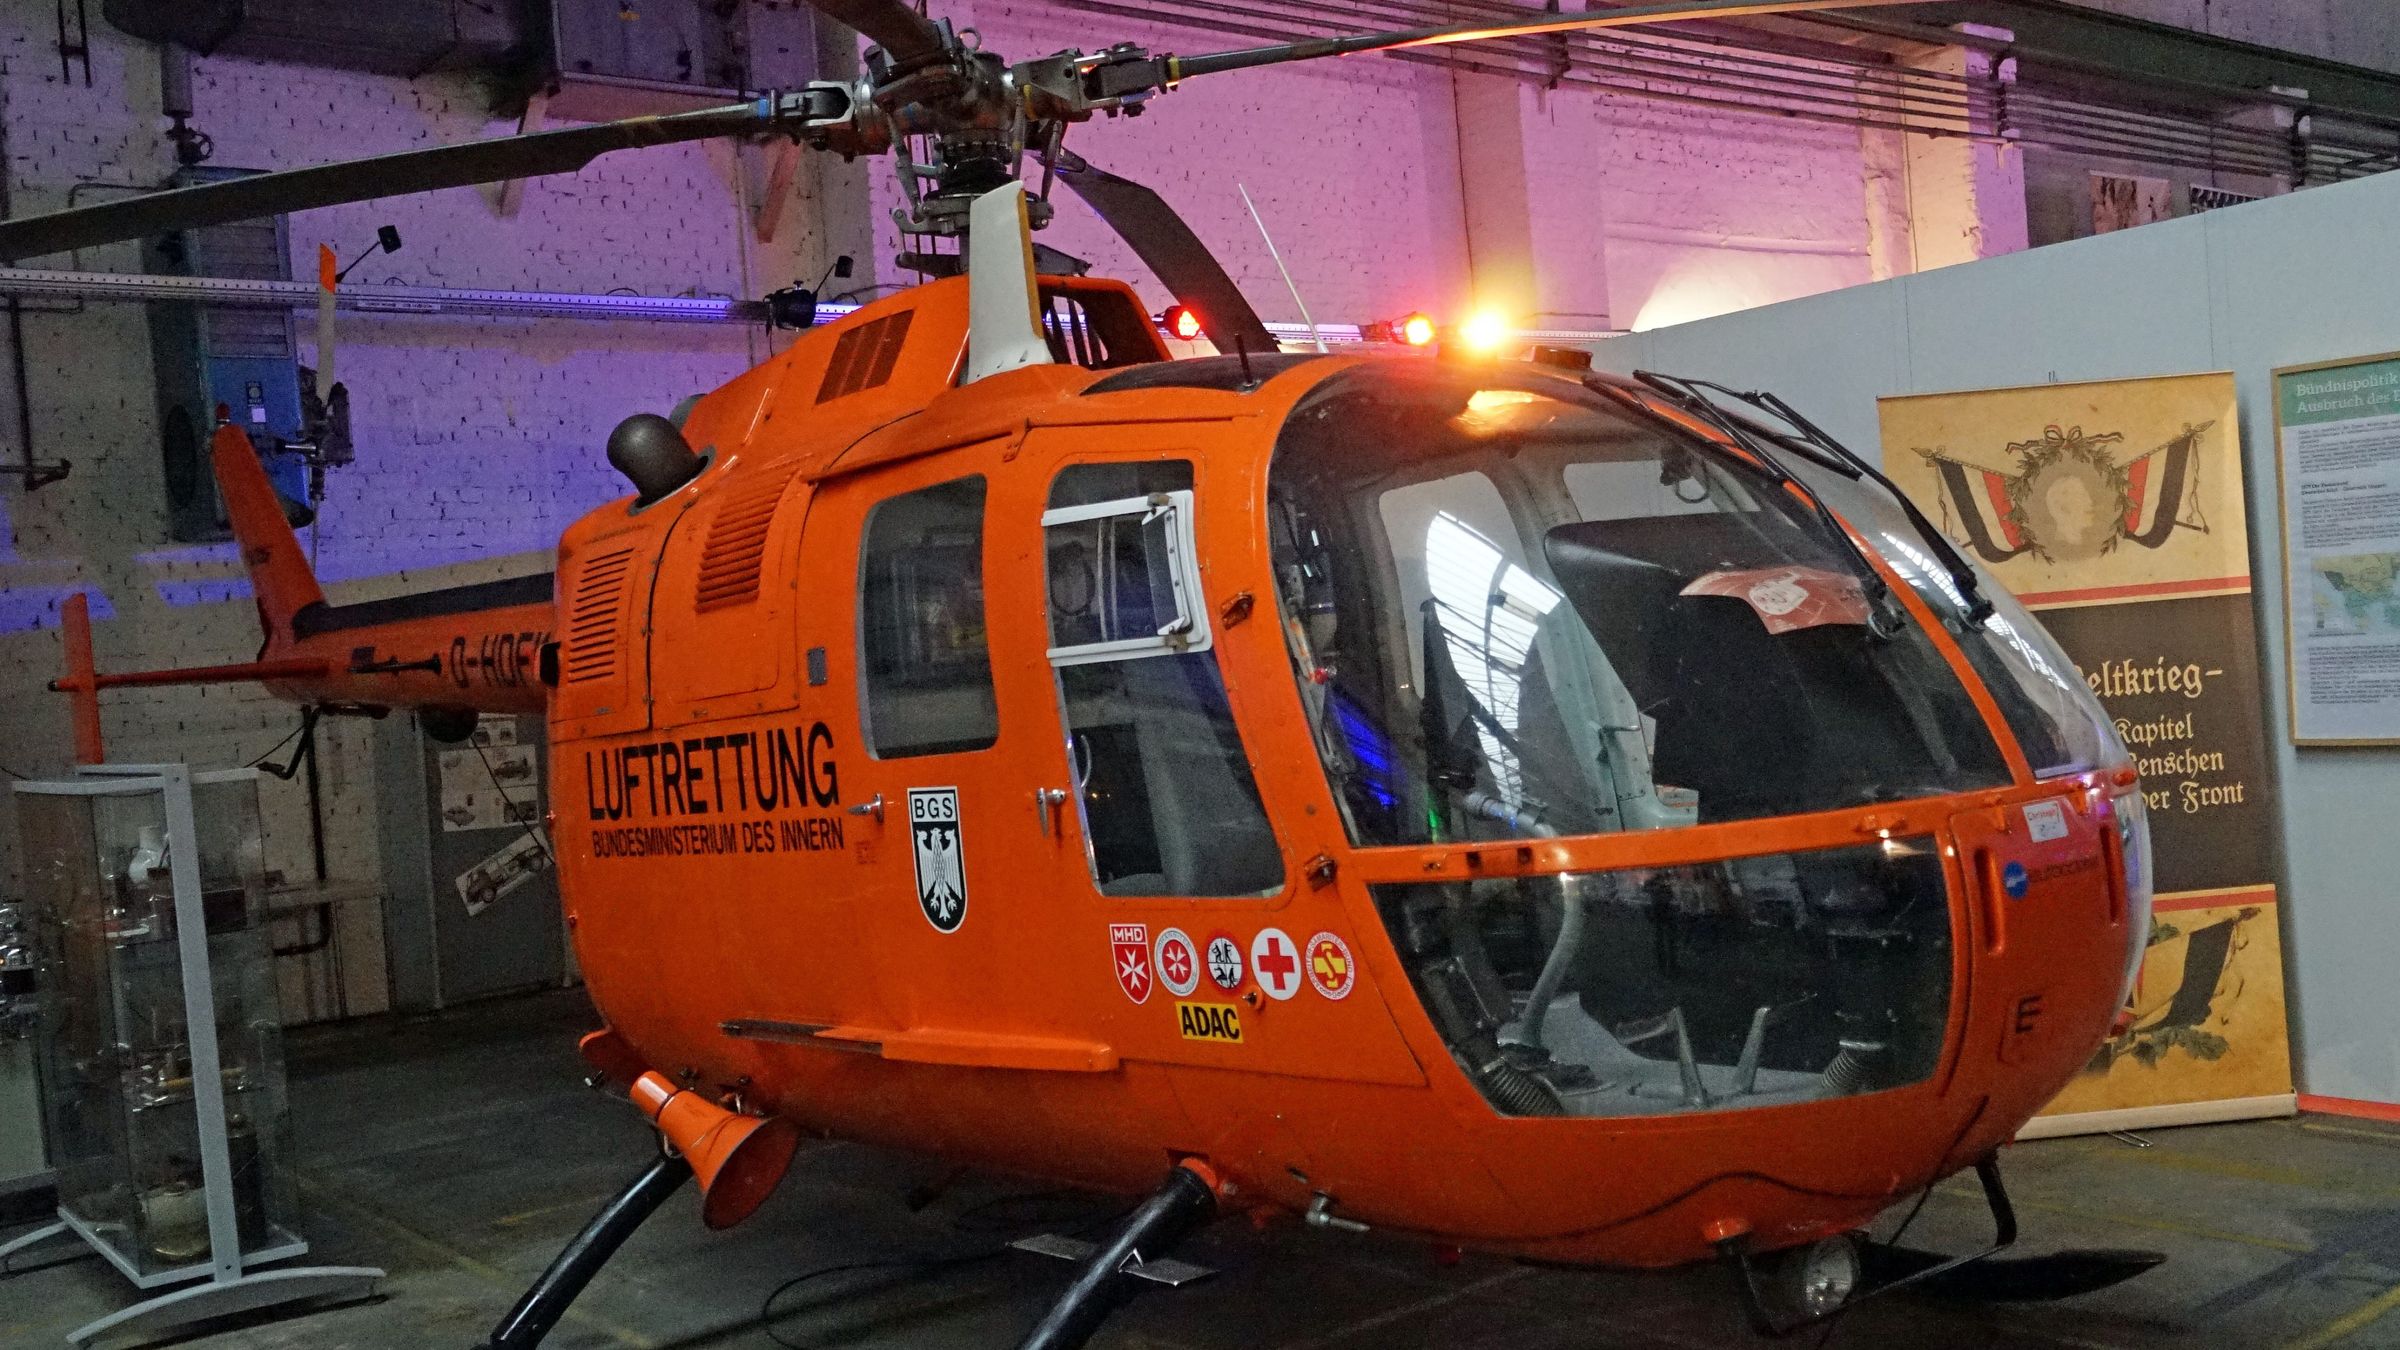 紧急救援的直升机翱翔蓝天实力抢镜高清壁纸